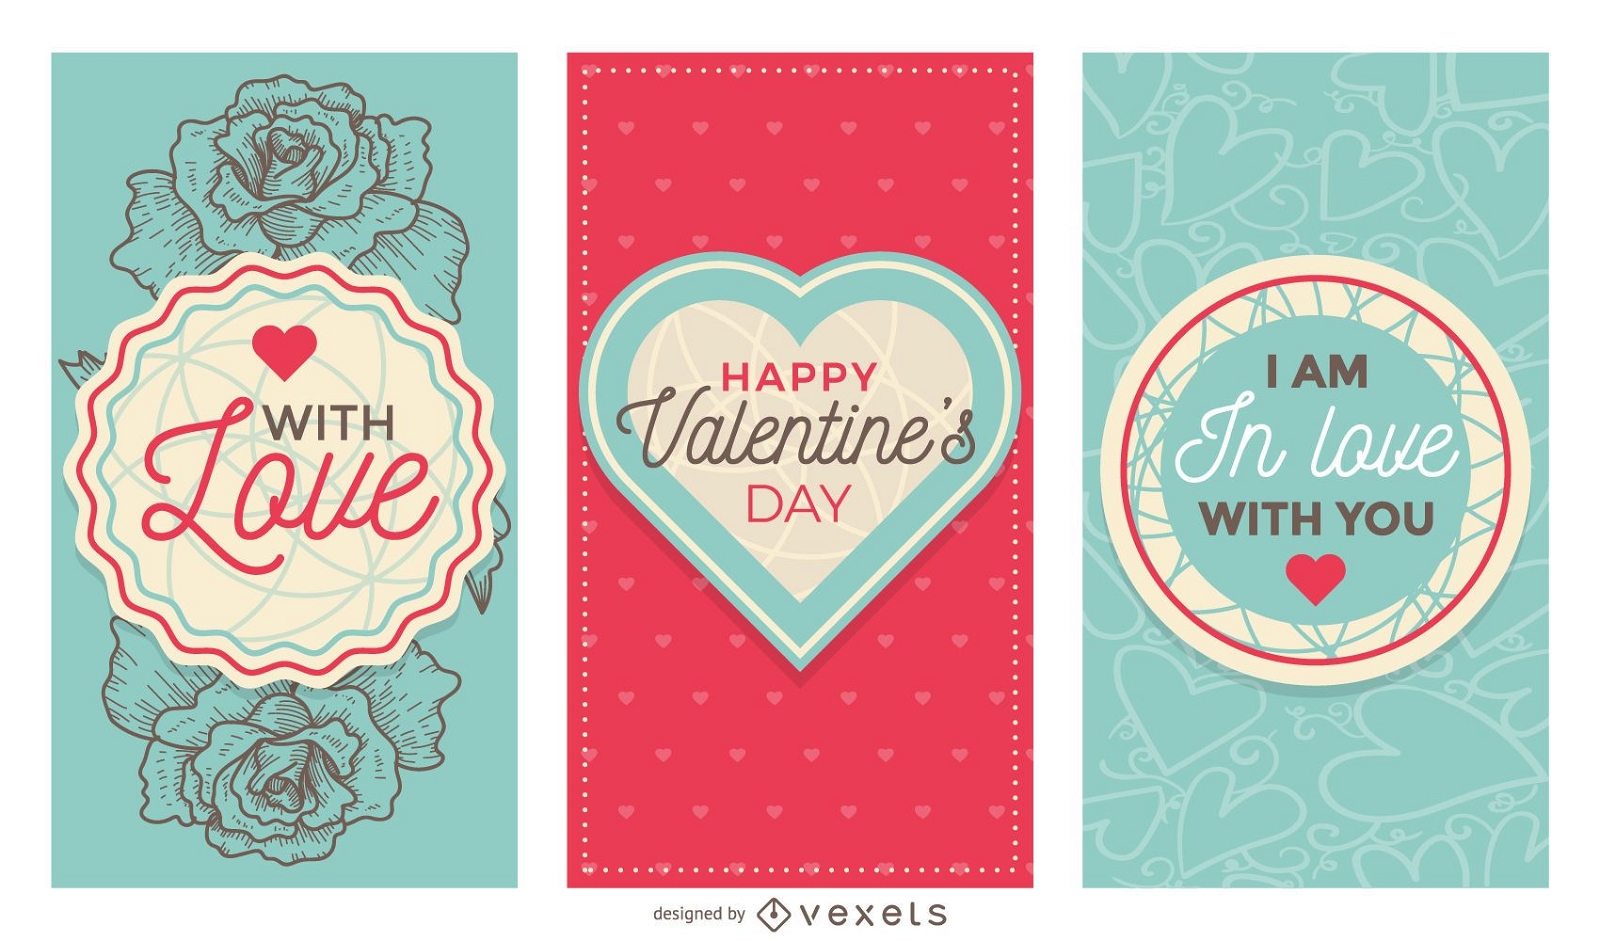 Cute Valentine's Day banner set